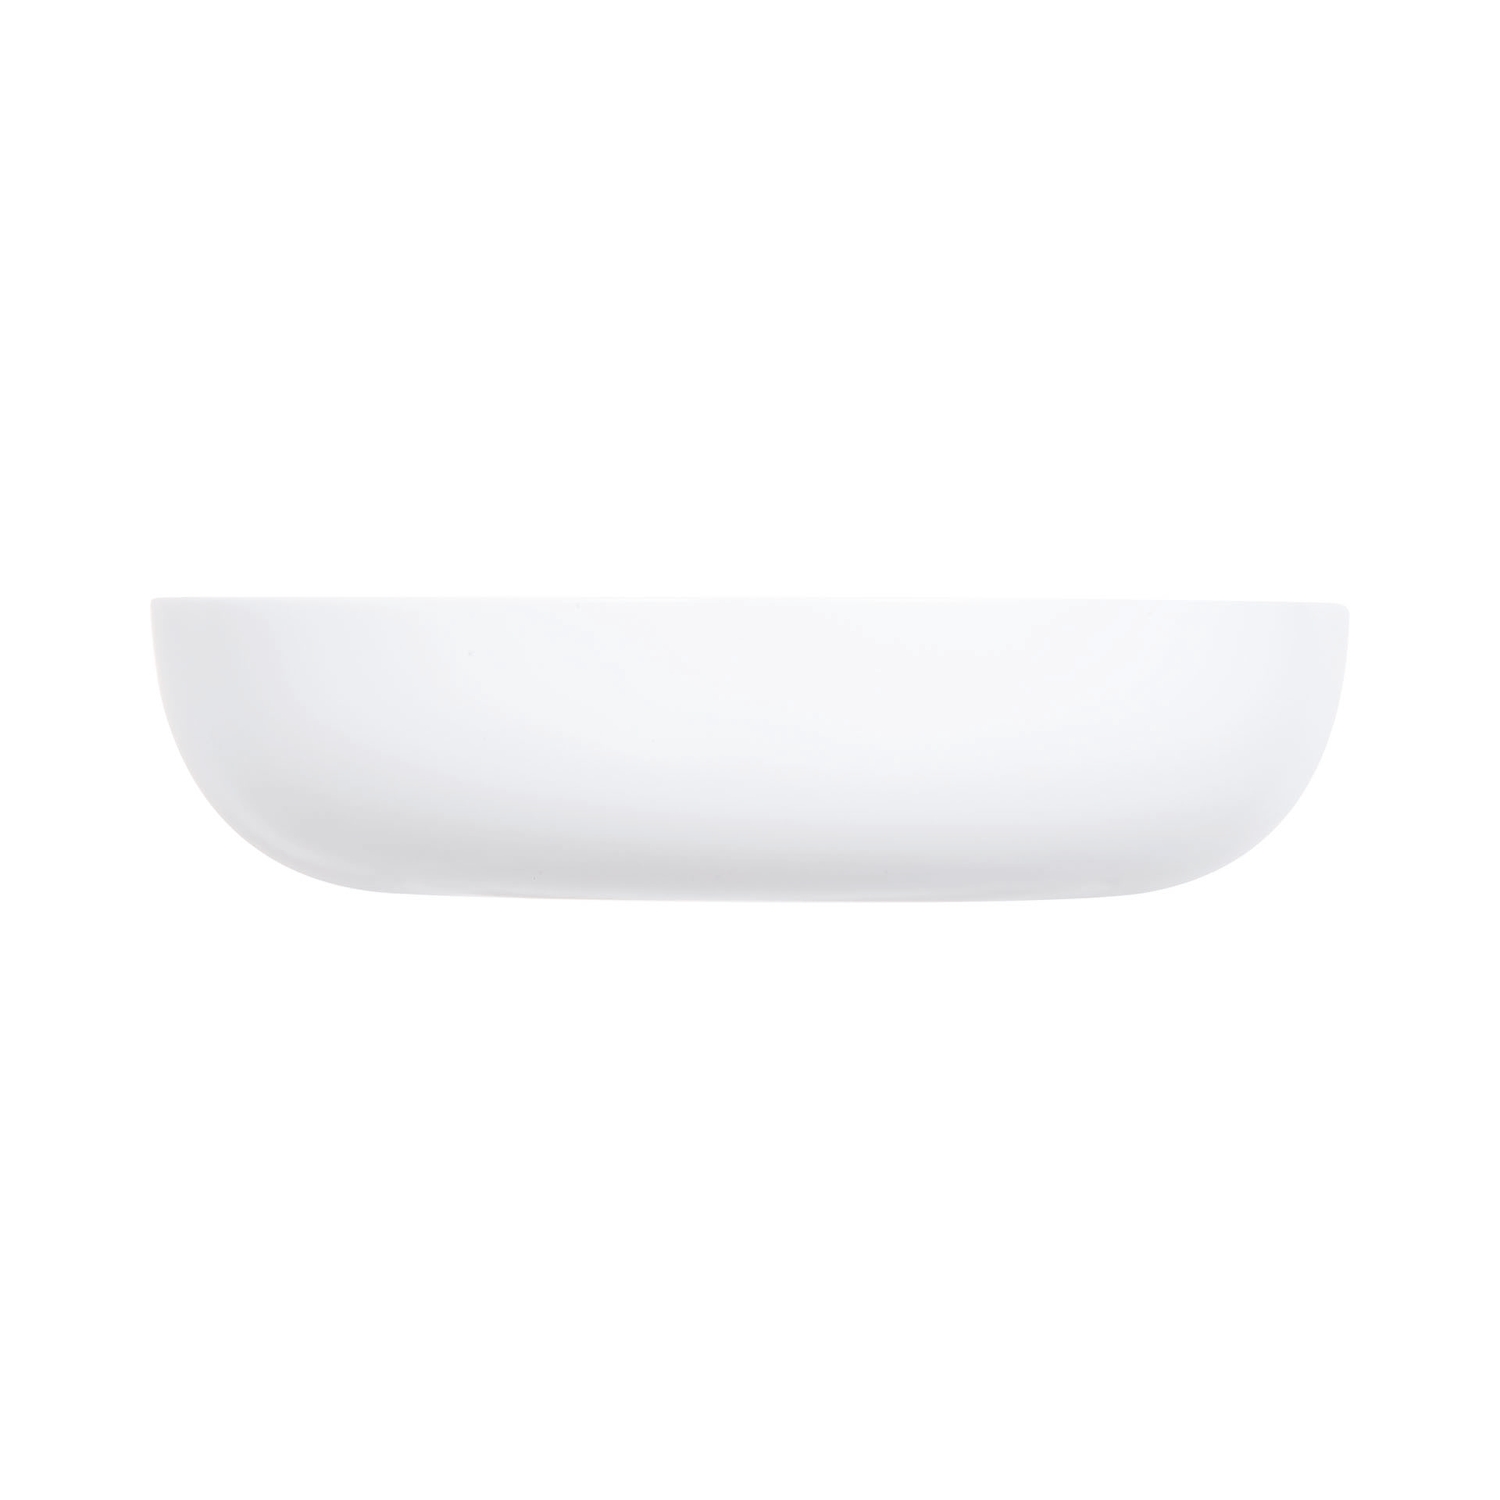 Тарелка для подачи Luminarc Френдс Тайм P6280 17см тарелка для супа 20 см qgam00031 churchill